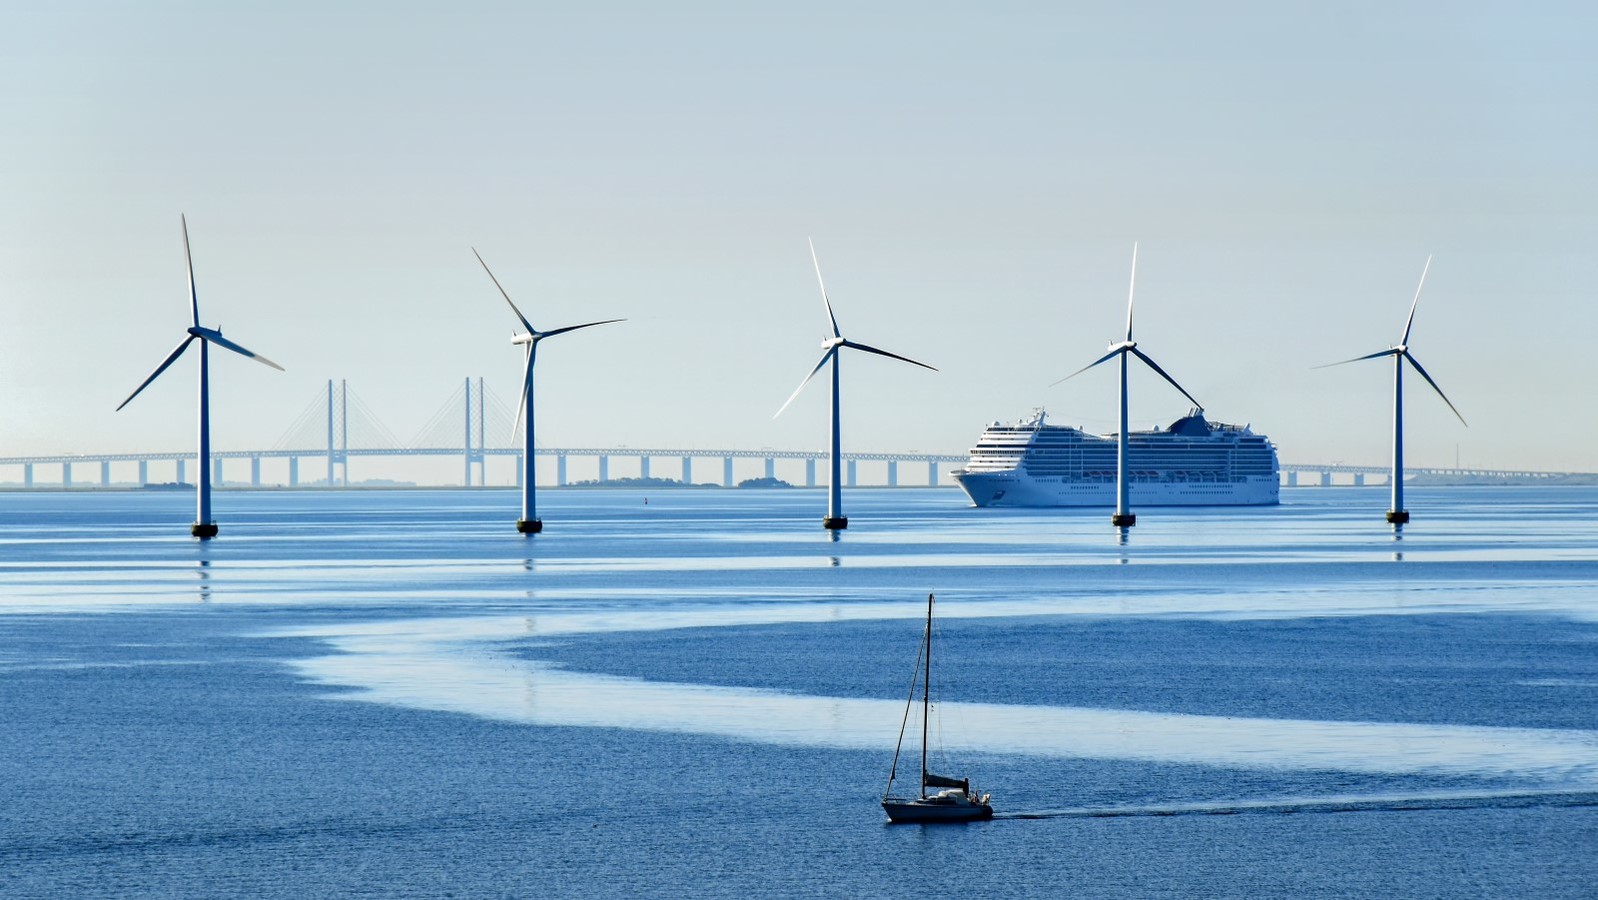 5 vindmøller i vandet med en sejlbåd i forgrunden samt en færge og Storebæltsbroen i baggrunden